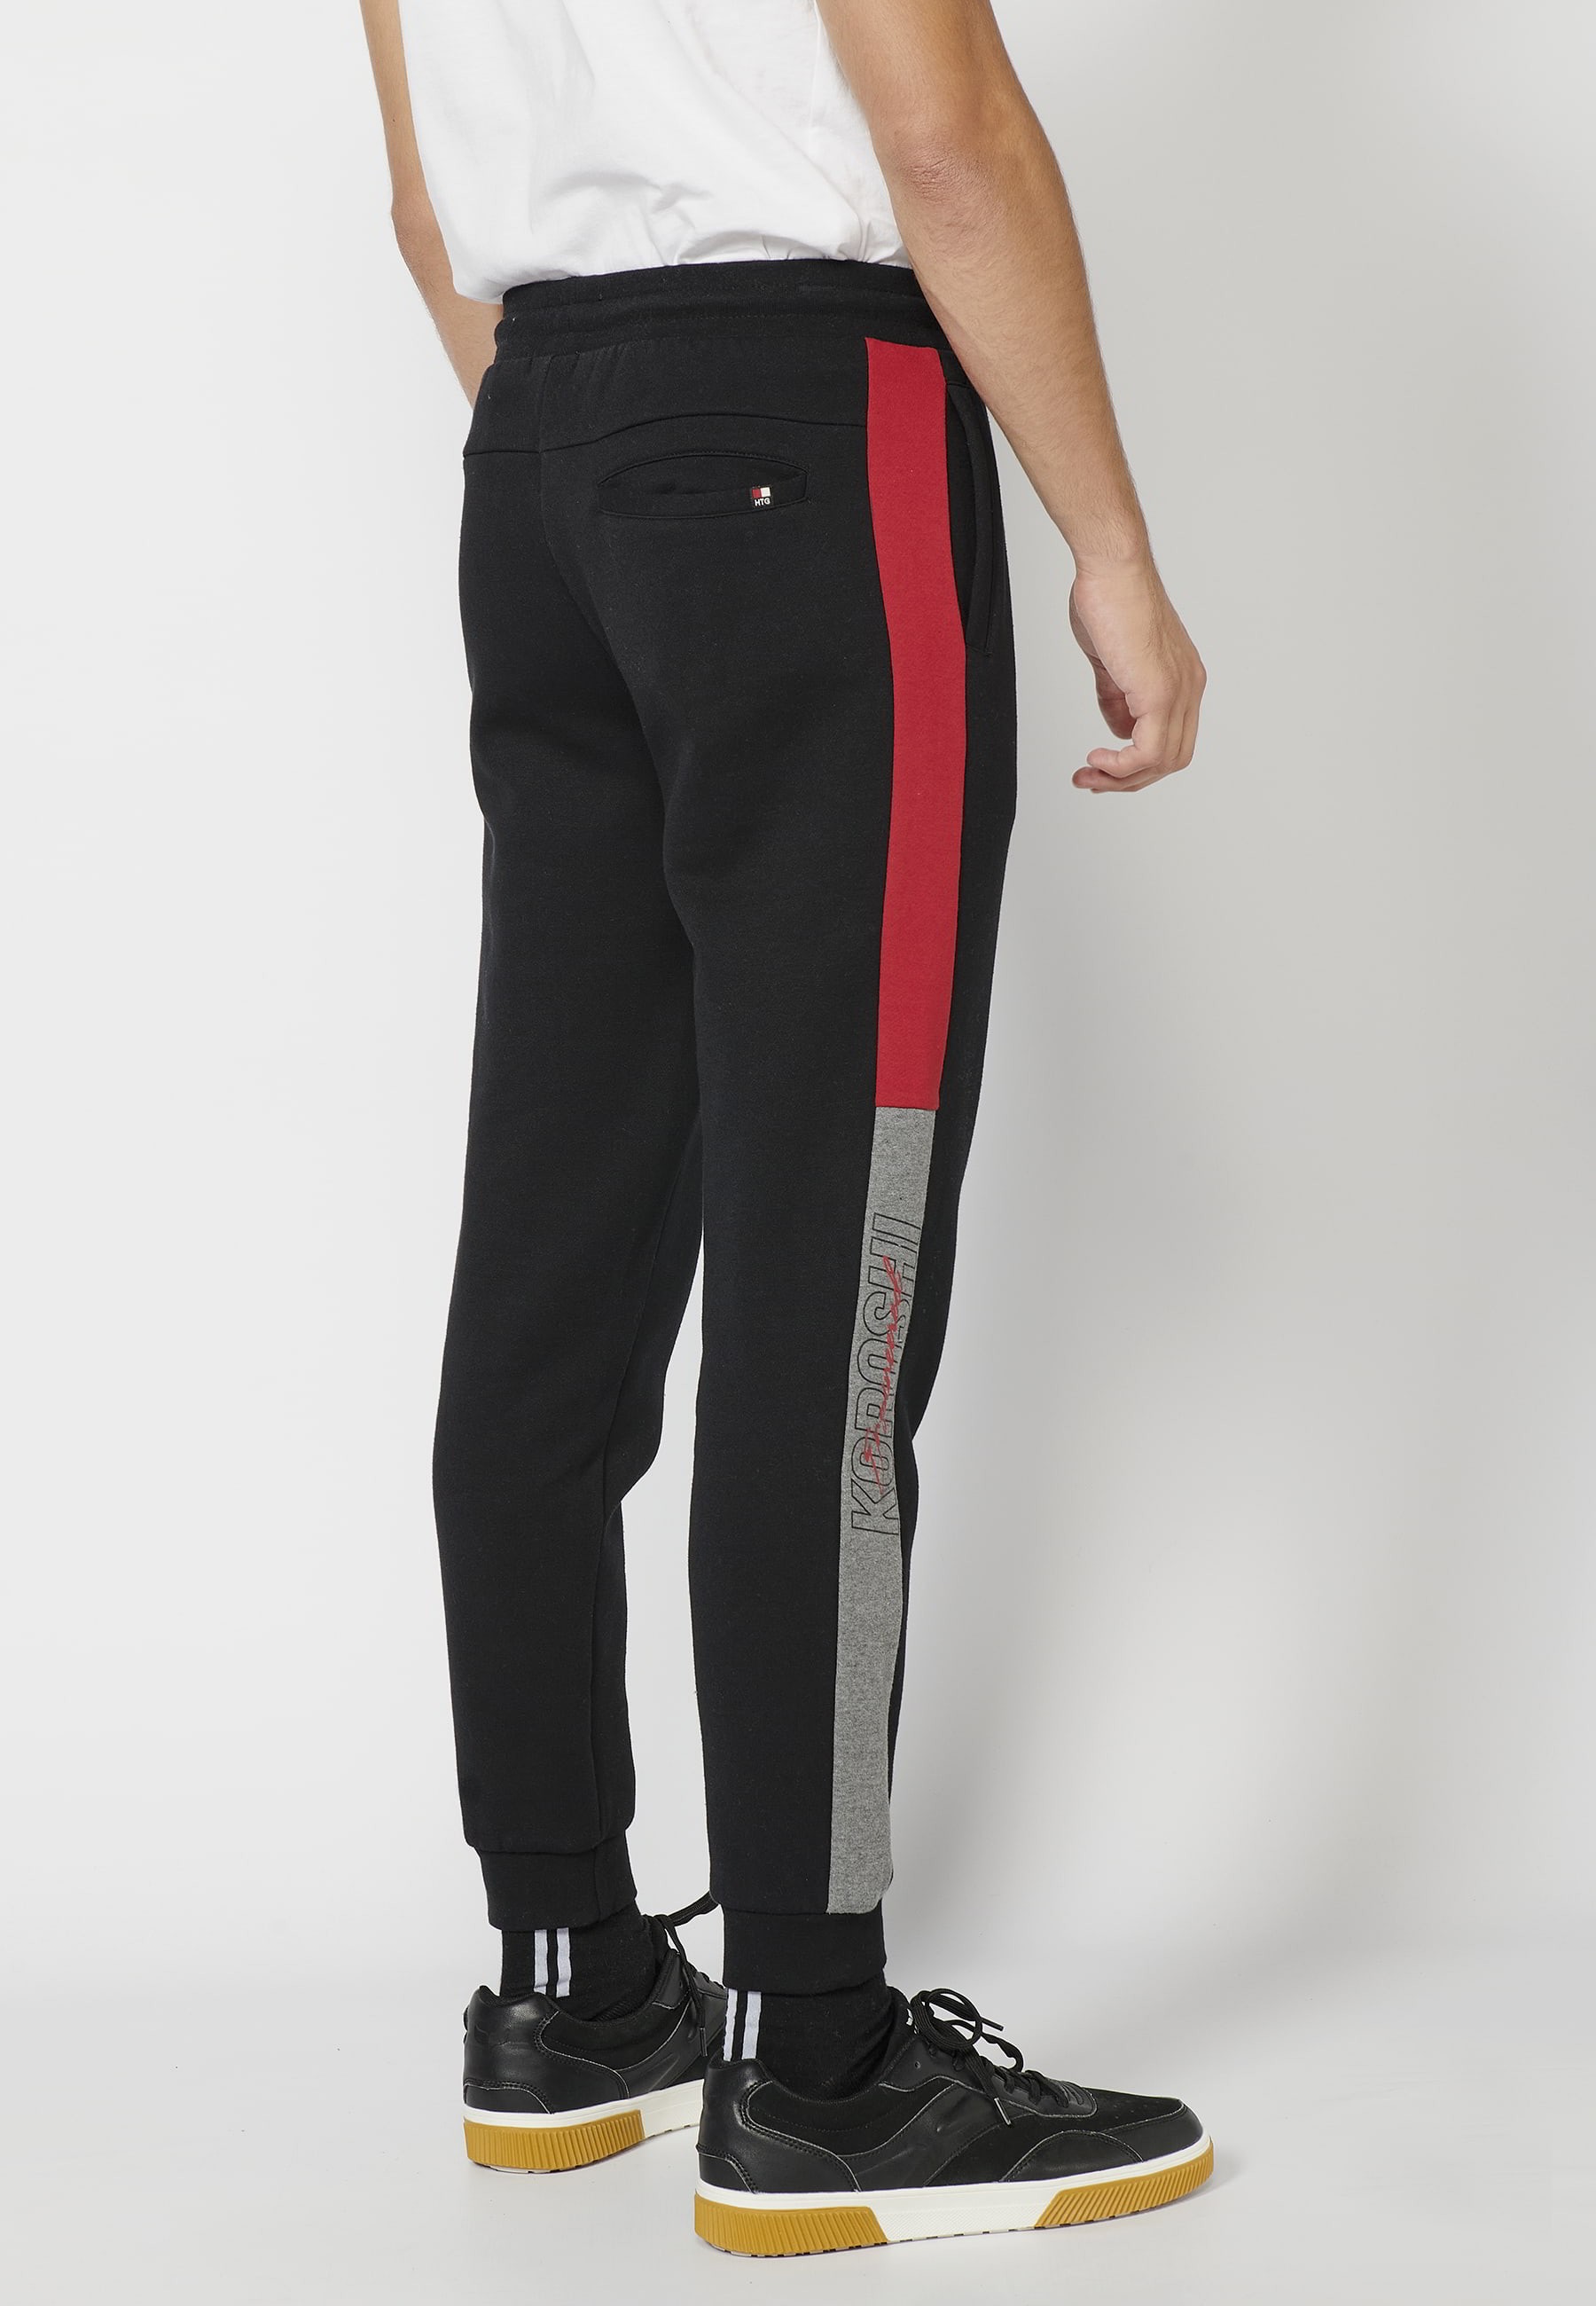 Long jogger pants with adjustable elastic waist, side detail, black color for Men